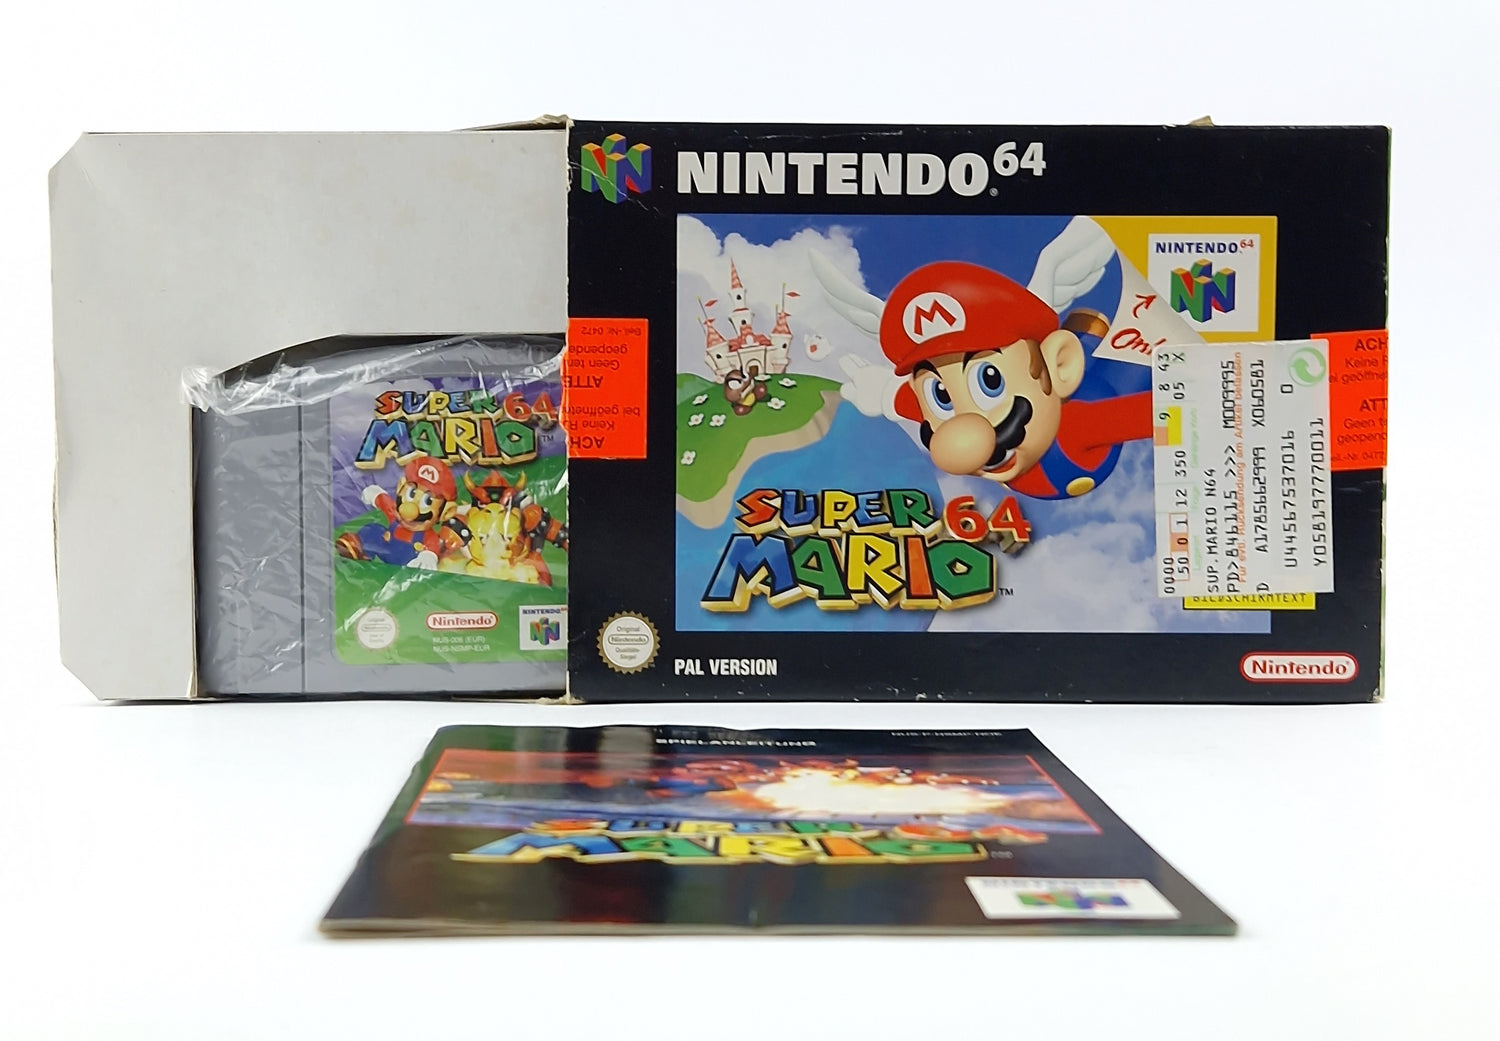 Nintendo 64 Spiel : Super Mario 64 - Modul Anleitung OVP cib / N64 Cartridge PAL